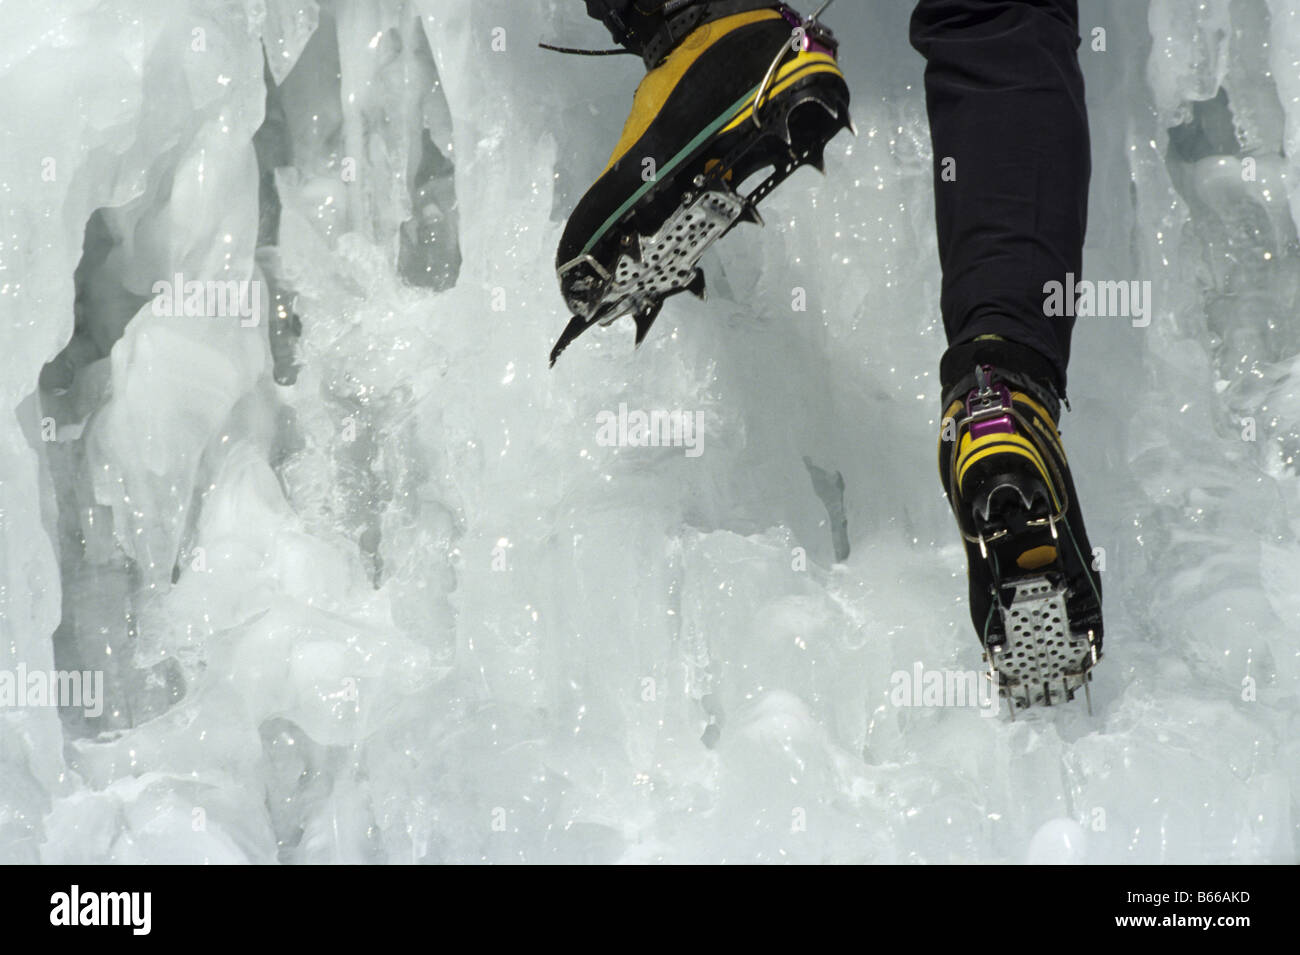 Escalador de hielo con crampones en botas de montaña - fotografía de stock